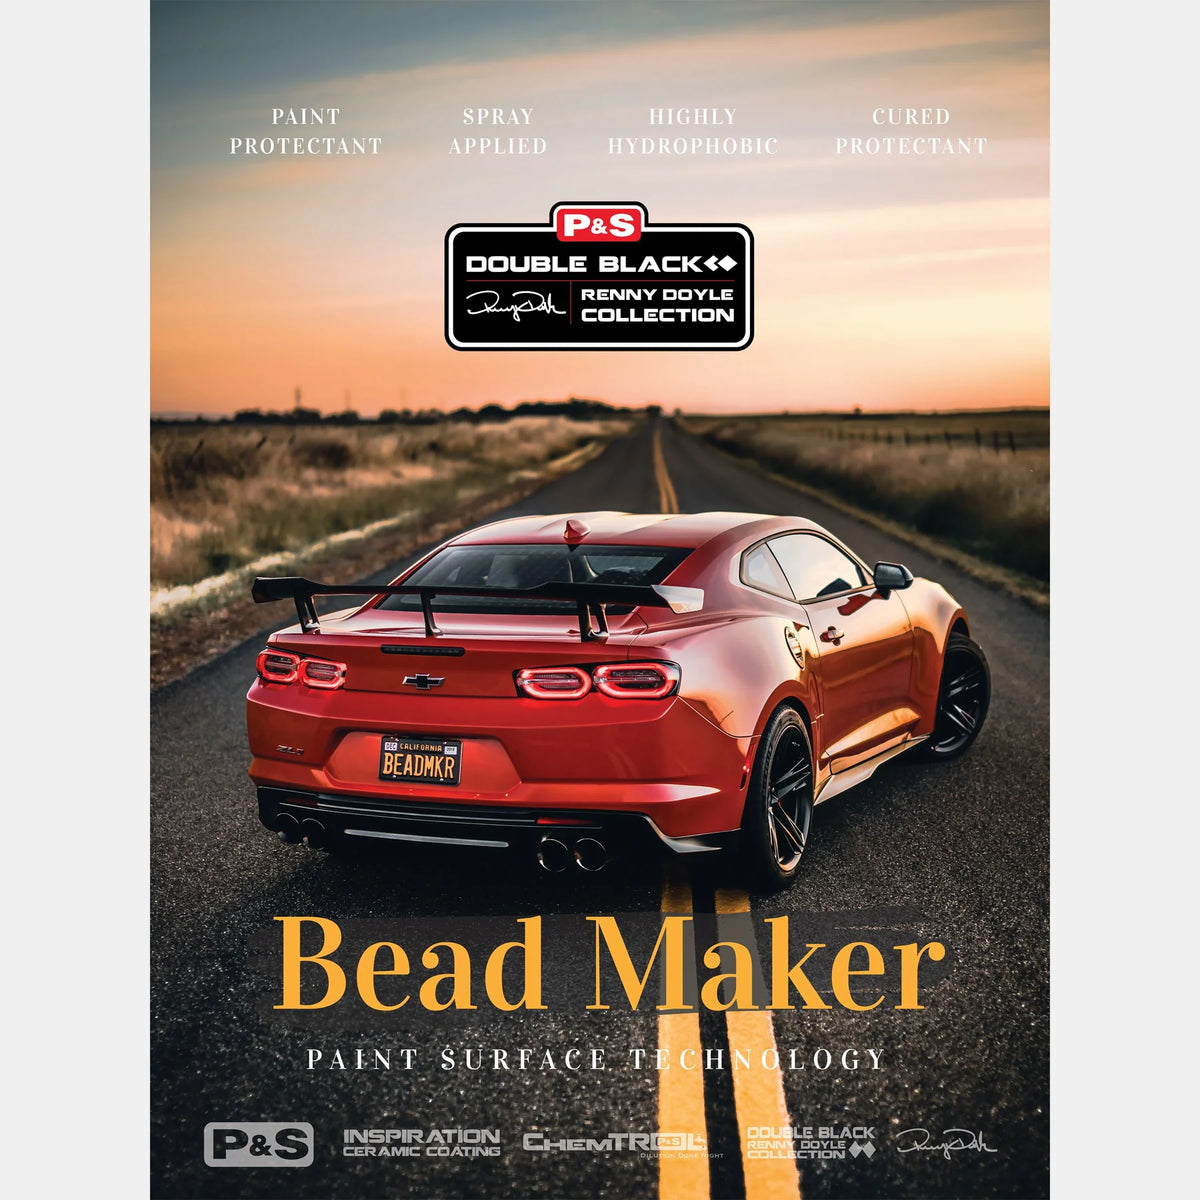 Banner - P&S Bead Maker